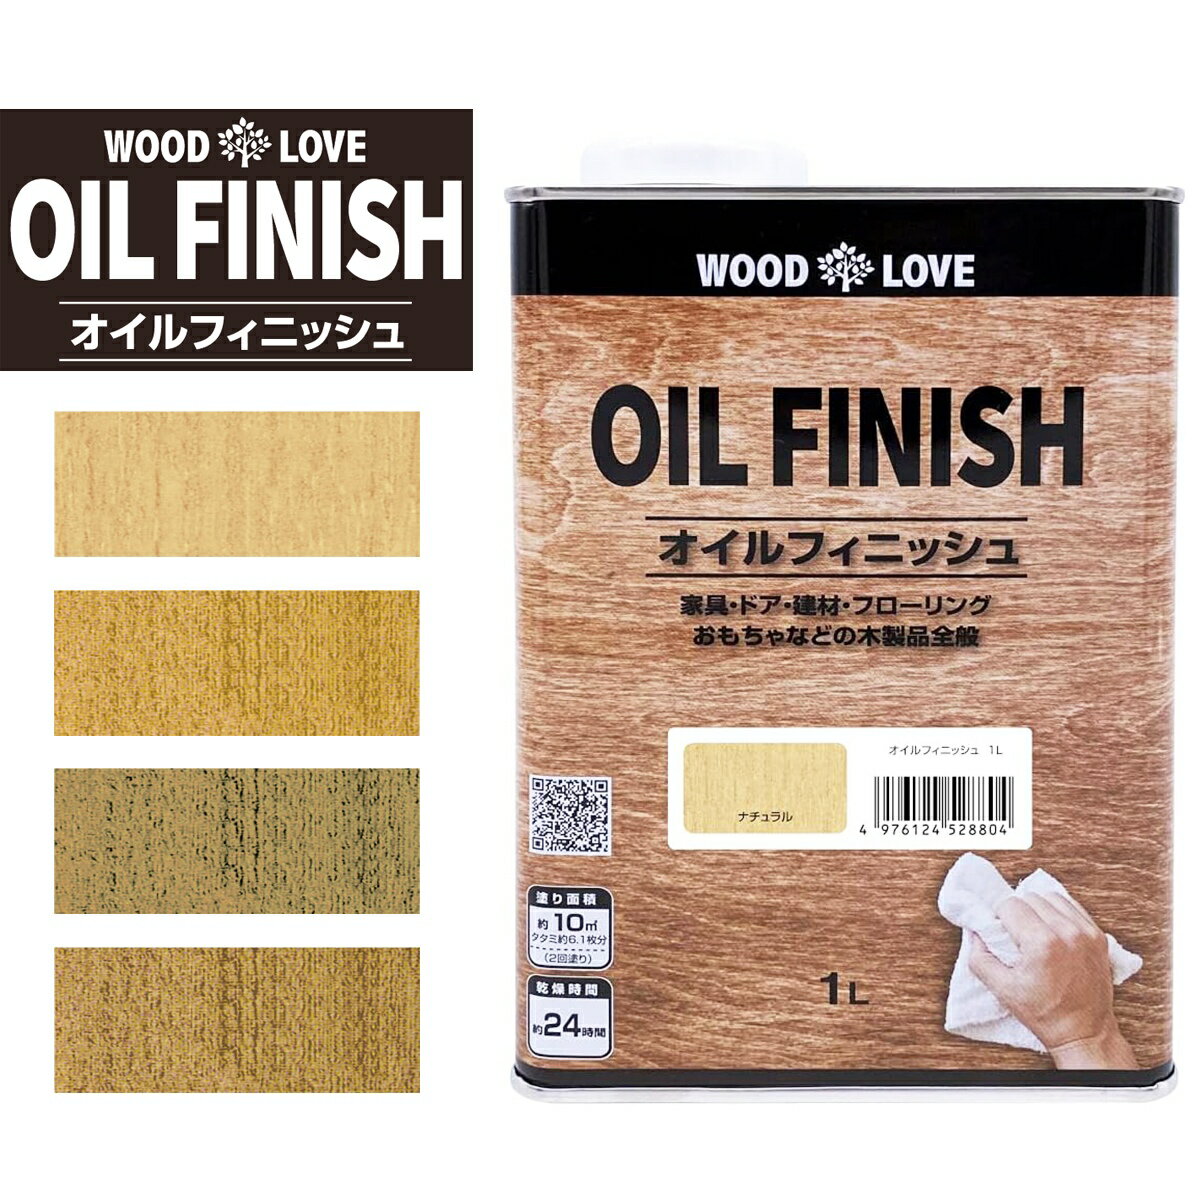 塗料 WOOD LOVE オイルフィニッシュ 1L ニッペホームプロダクツ ステイン 木材用着色保護塗料 オイル塗装 木部 家具 ドア おもちゃ